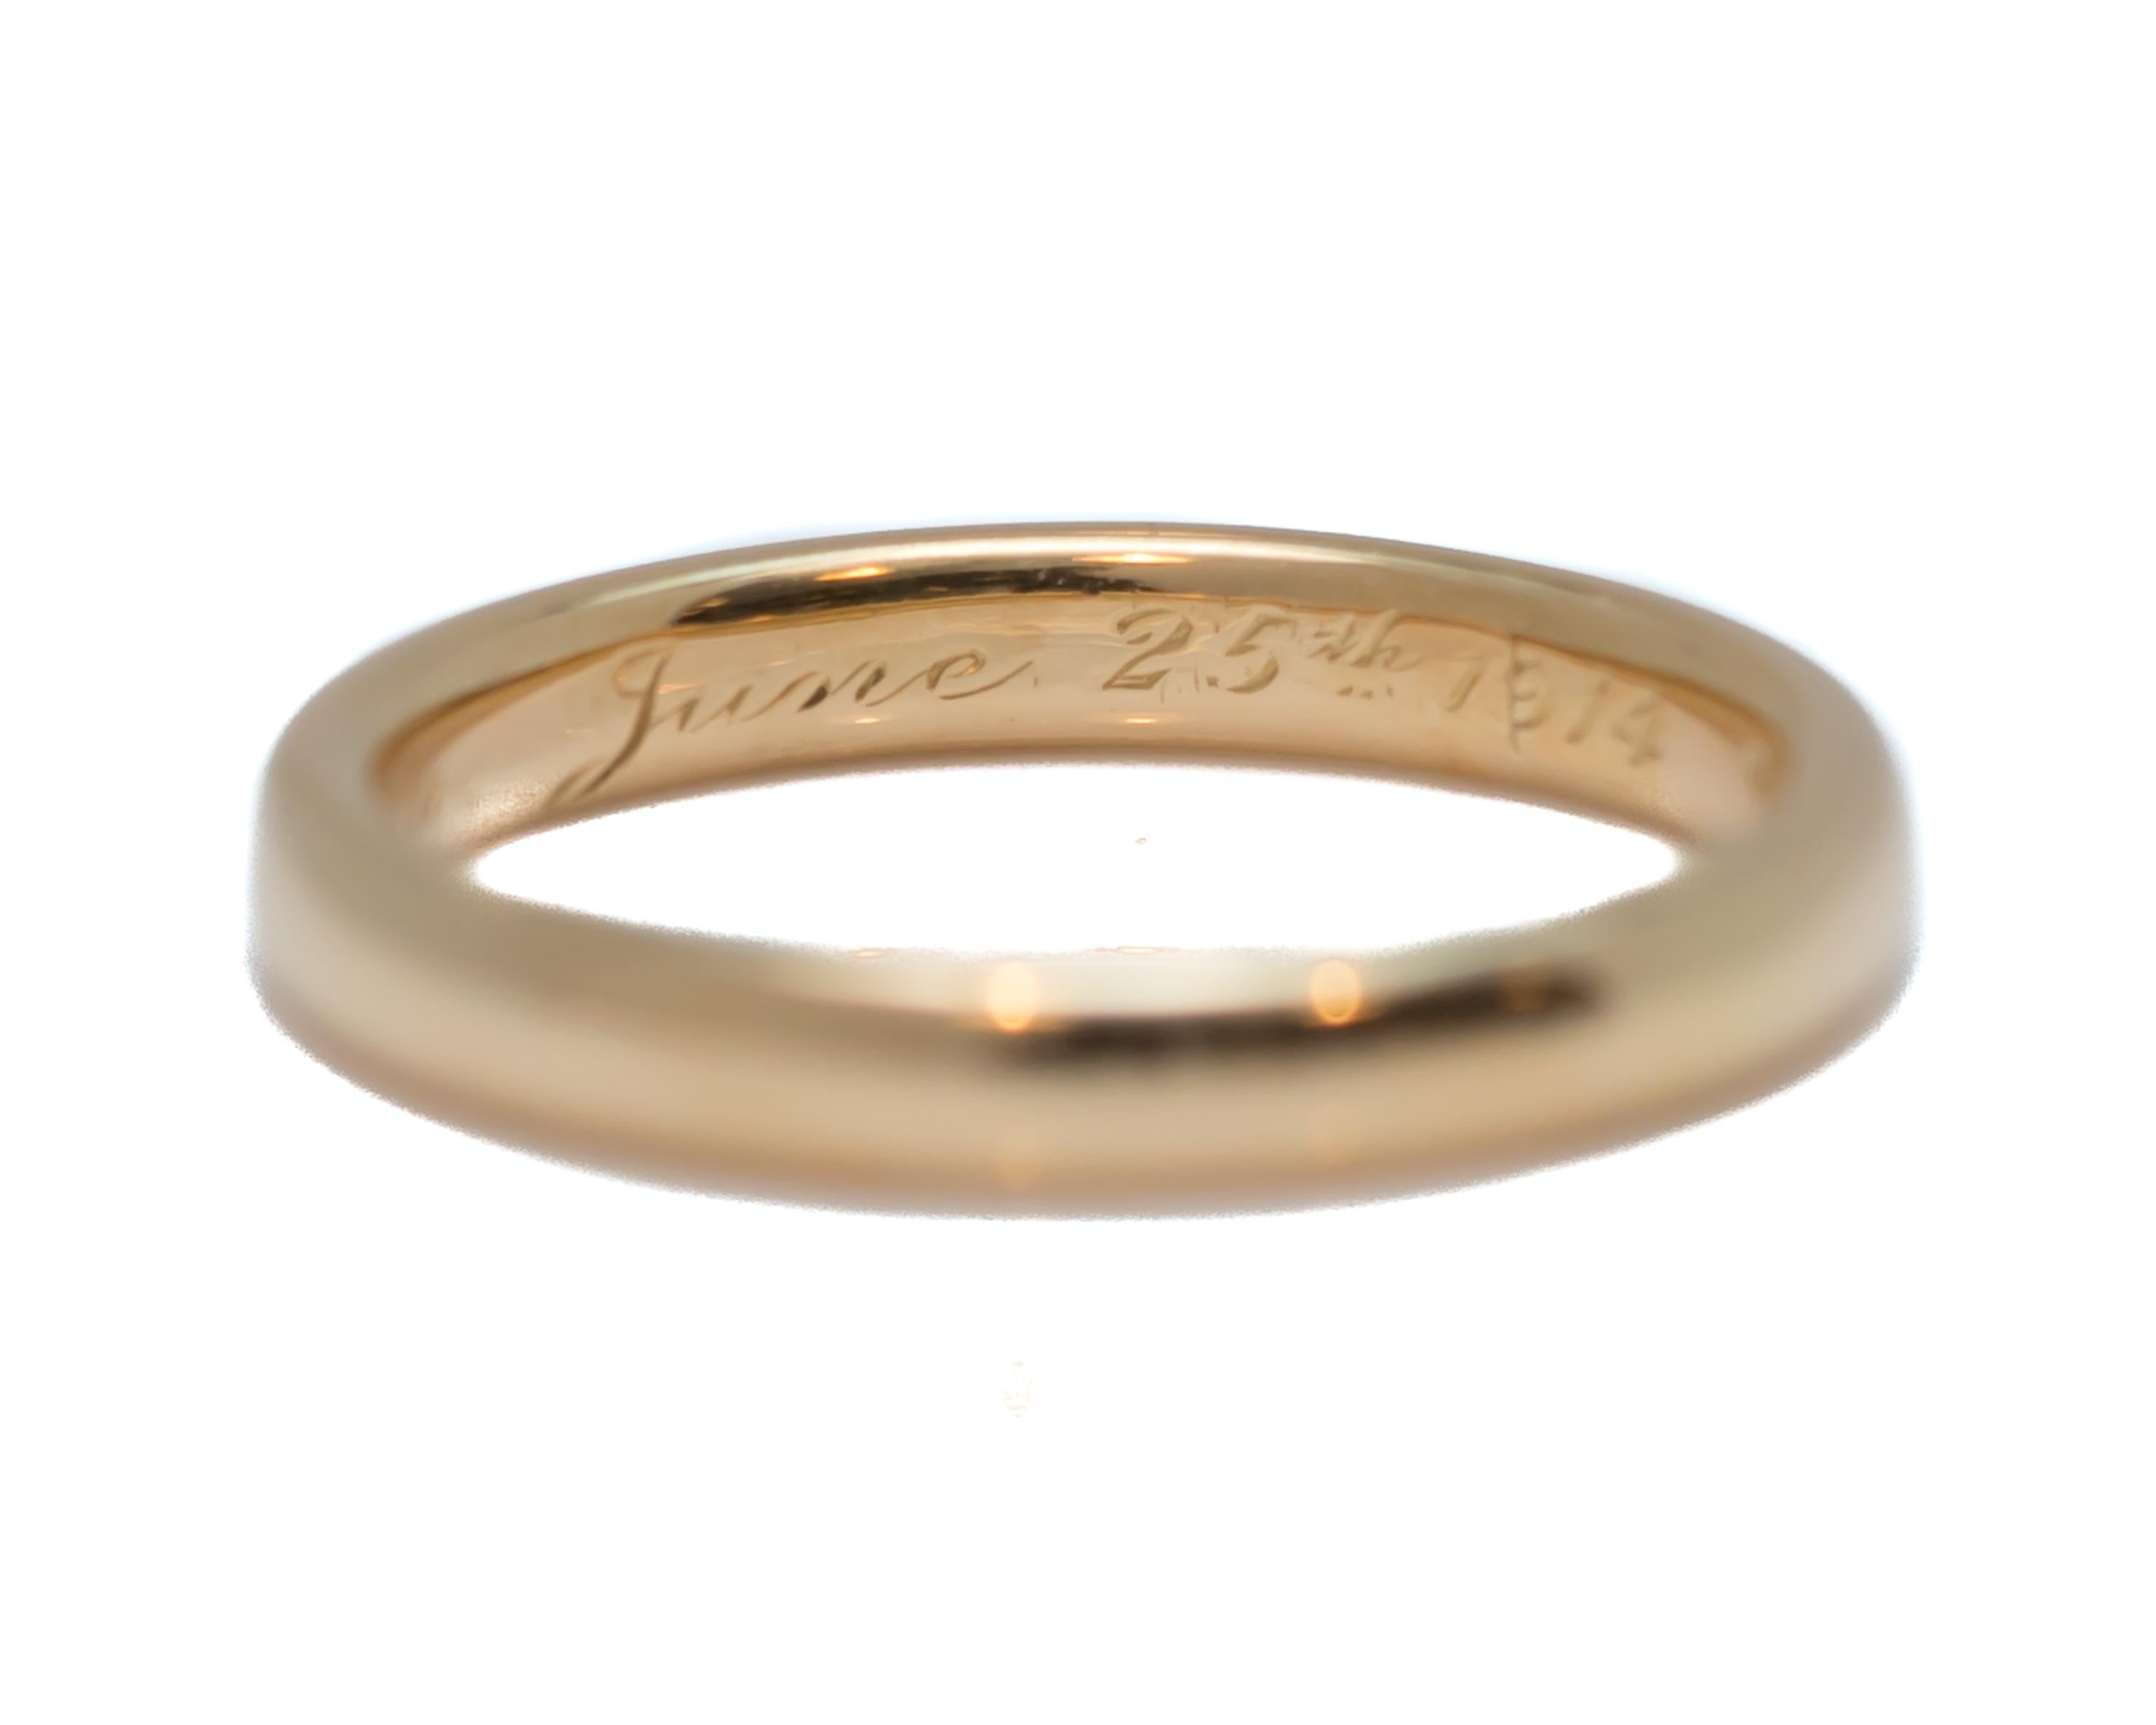 18 karat gold wedding ring